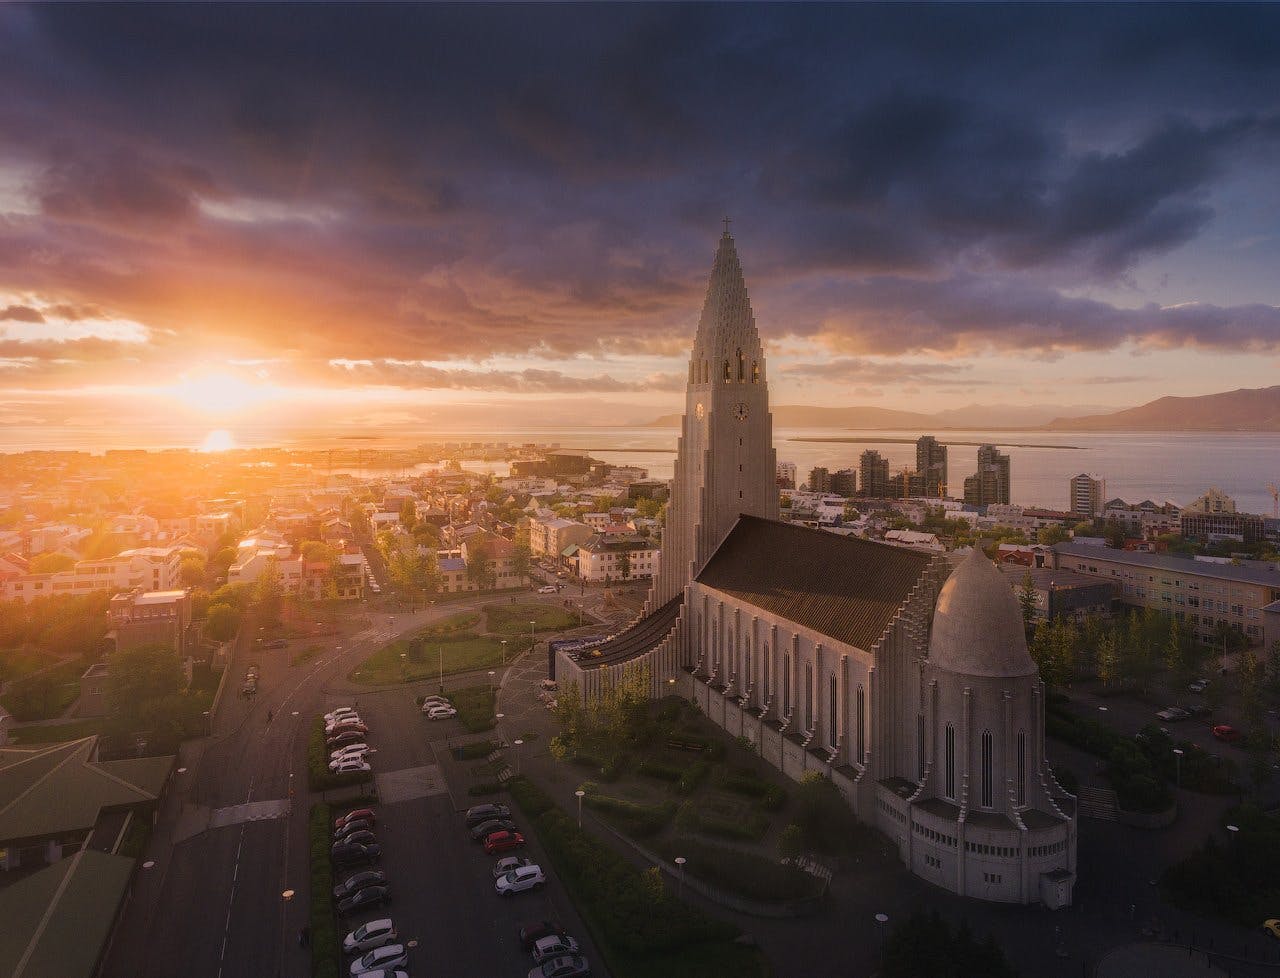 Una veduta aerea di Reykjavík rivela la bellezza della città sotto il sole di mezzanotte.